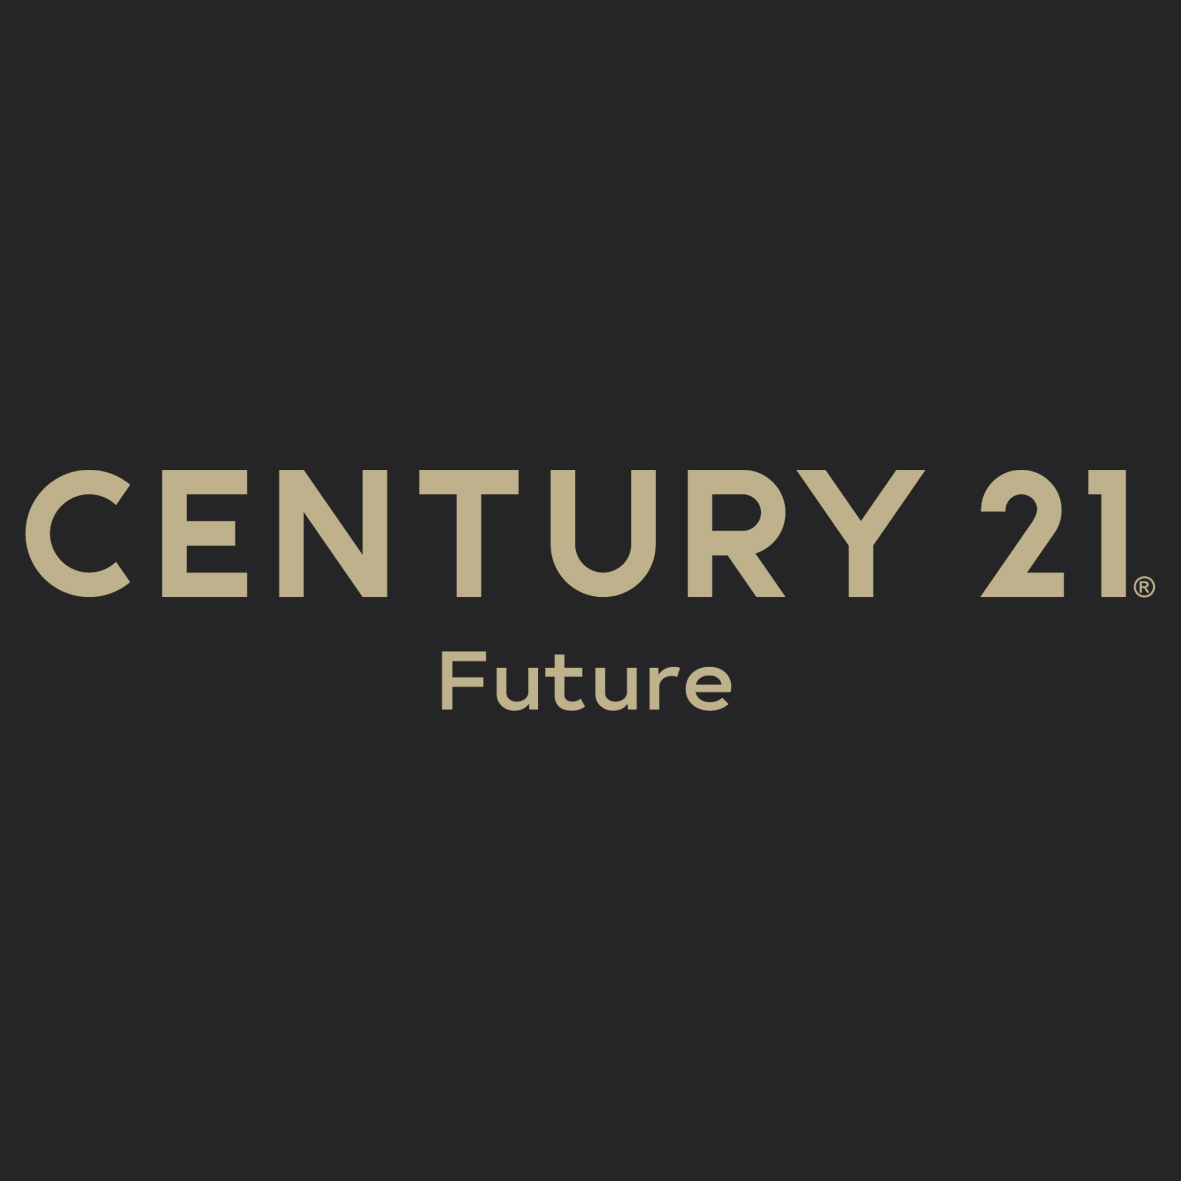 CENTURY 21 Future